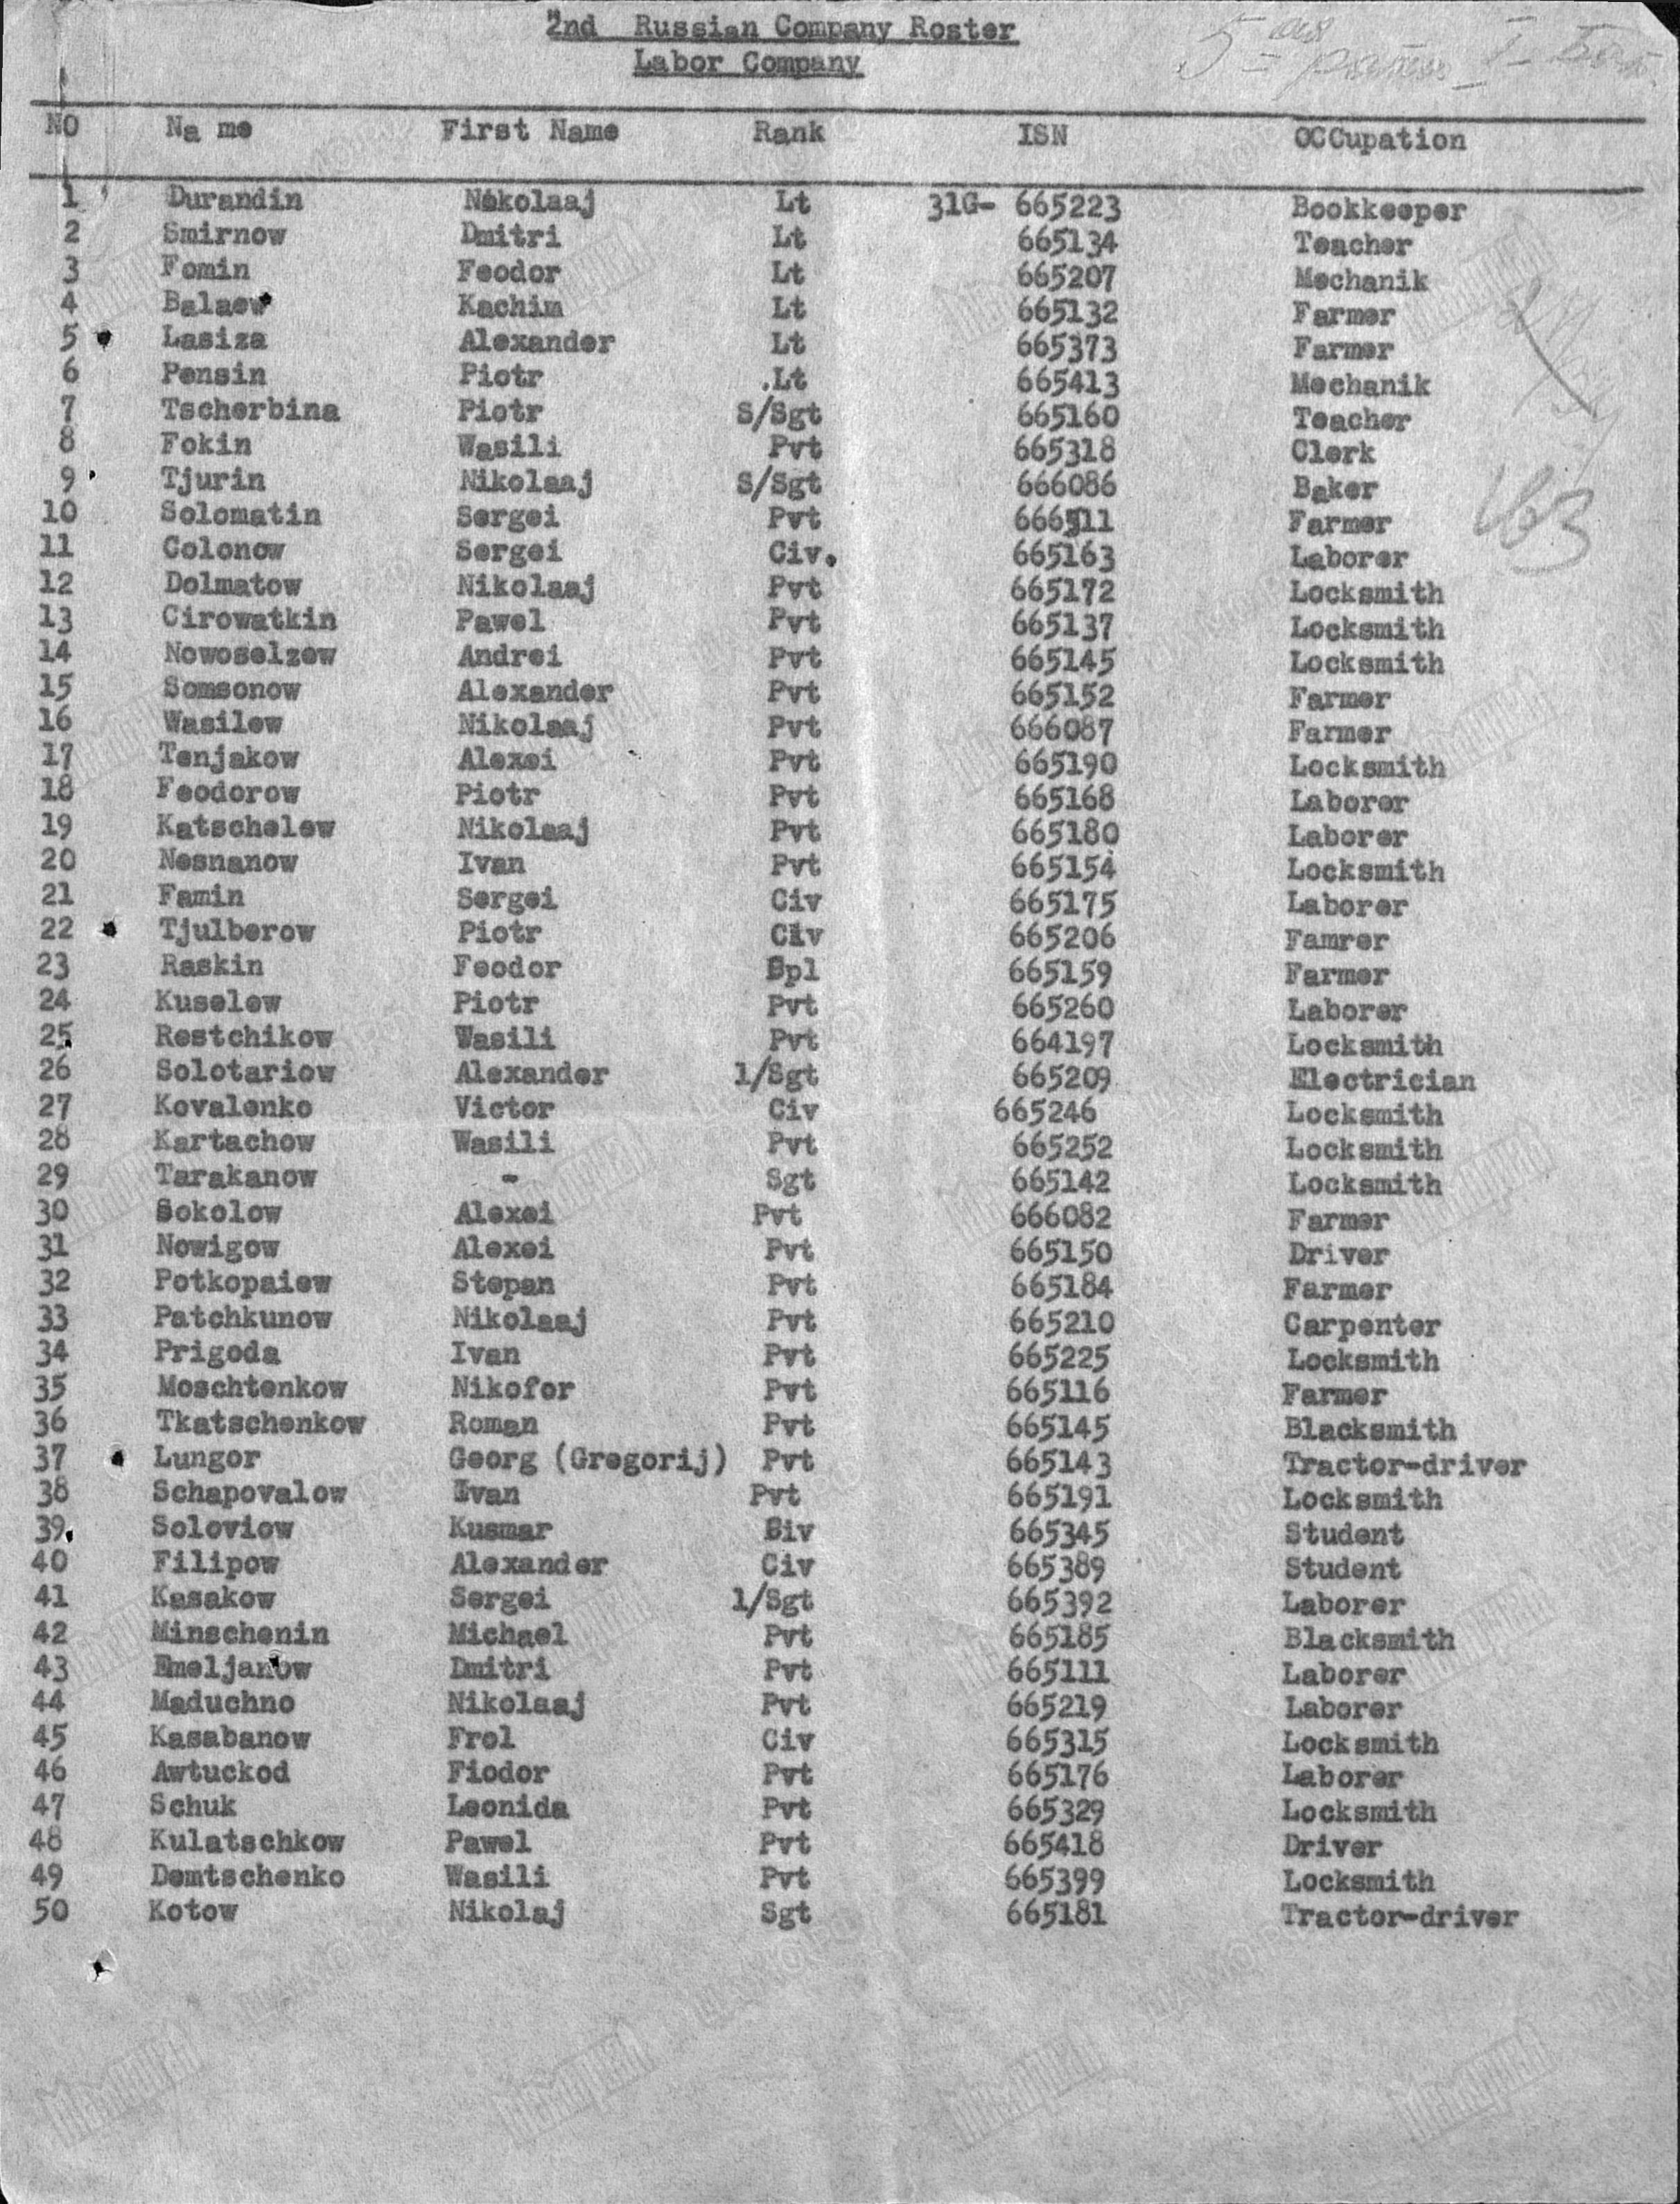 Список русских военнопленных на украине